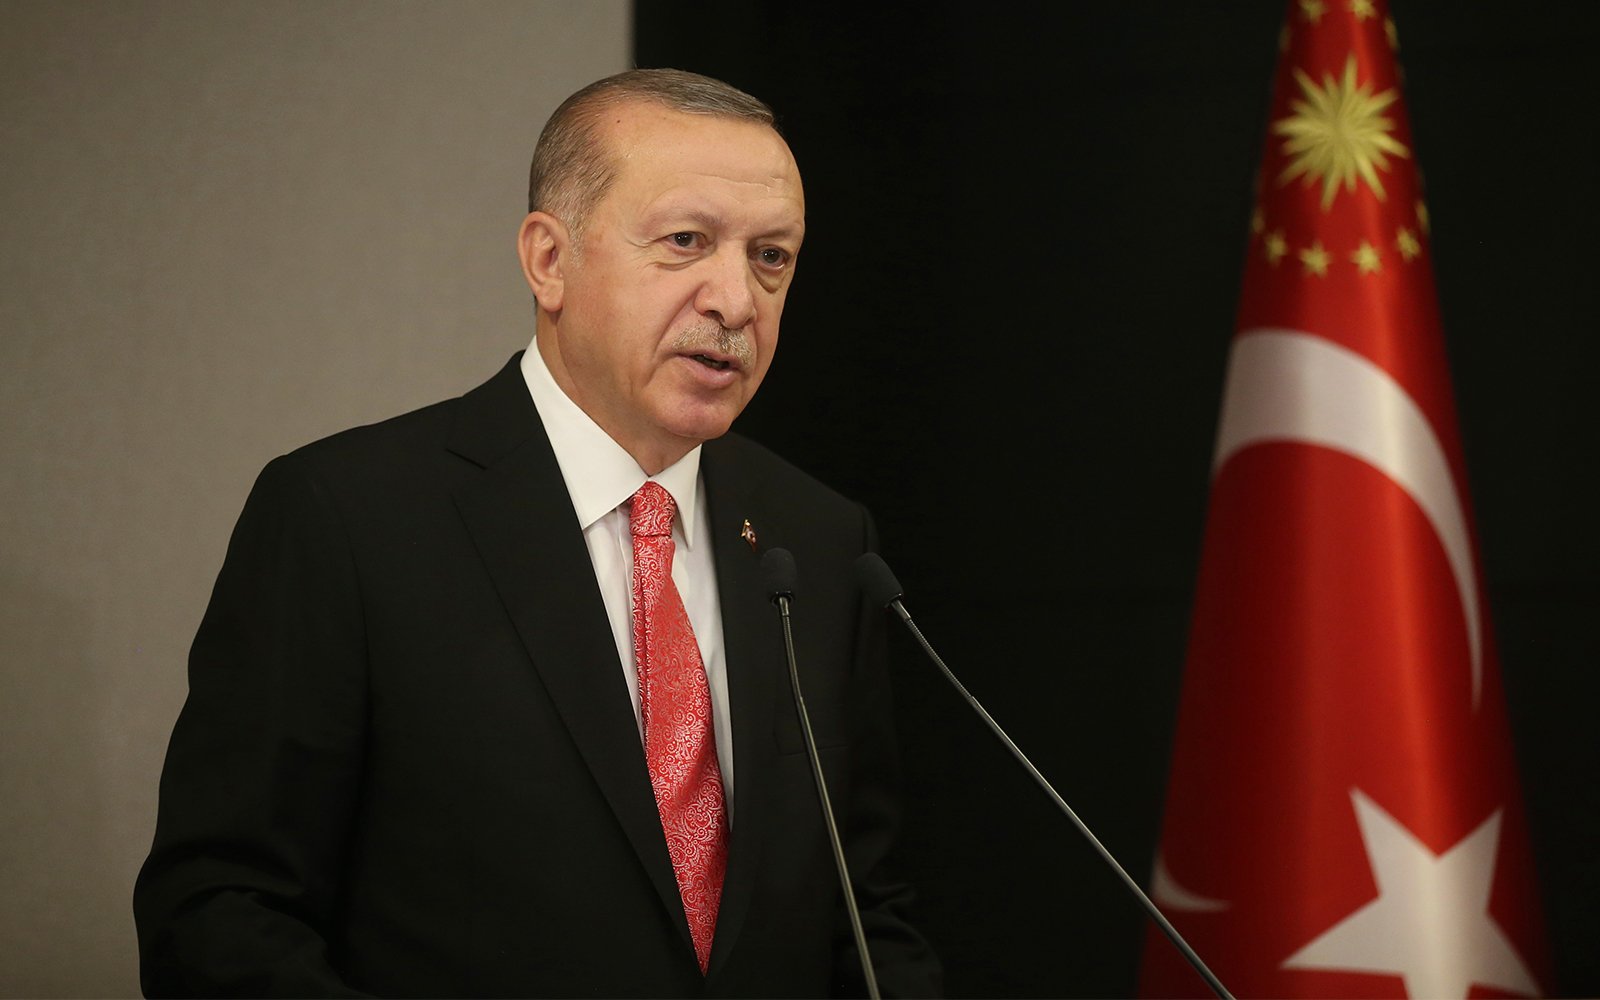 Chính sách bảo thủ của Tổng thống Recep Tayyip Erdogan đã khiến mức lạm phát của Thổ Nhĩ Kỳ tăng cao